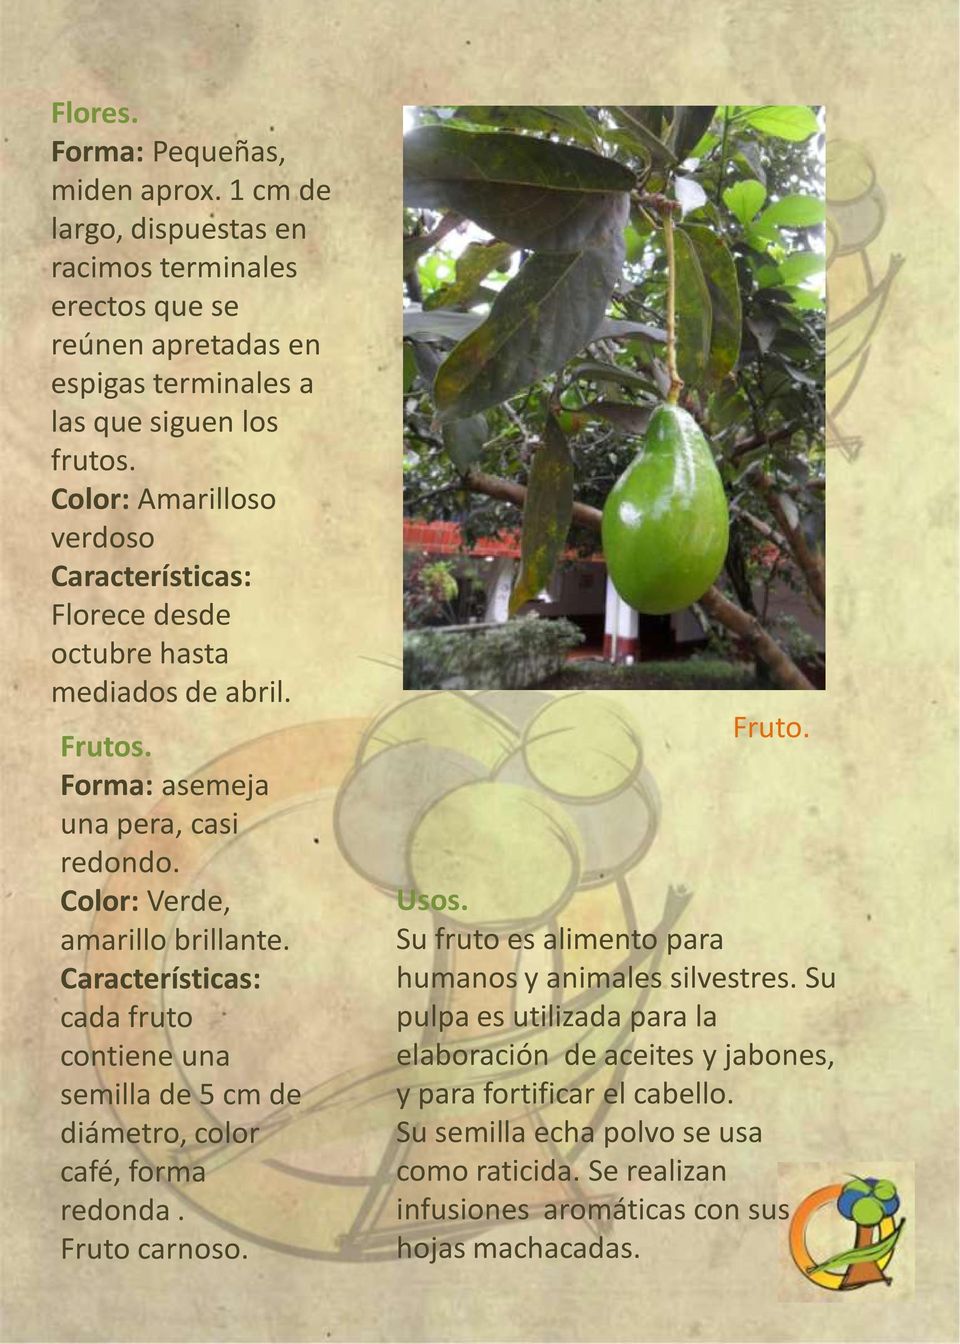 Características: cada fruto contiene una semilla de 5 cm de diámetro, color café, forma redonda. Fruto carnoso. Fruto. Usos.